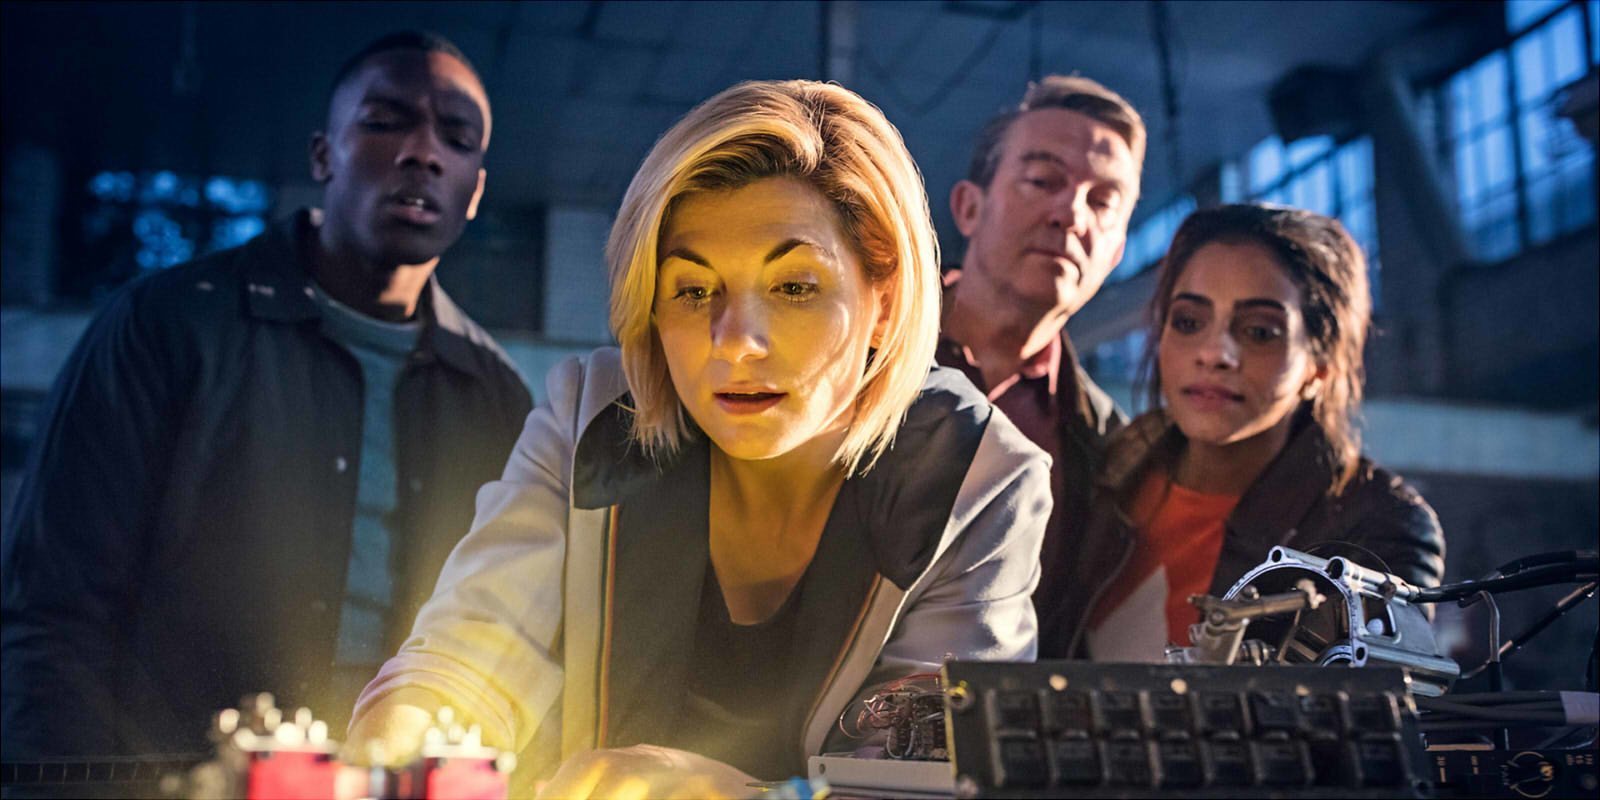 La nueva temporada de 'Doctor Who' ha arrasado, y BBC renueva por otra entrega con Jodie Whittaker